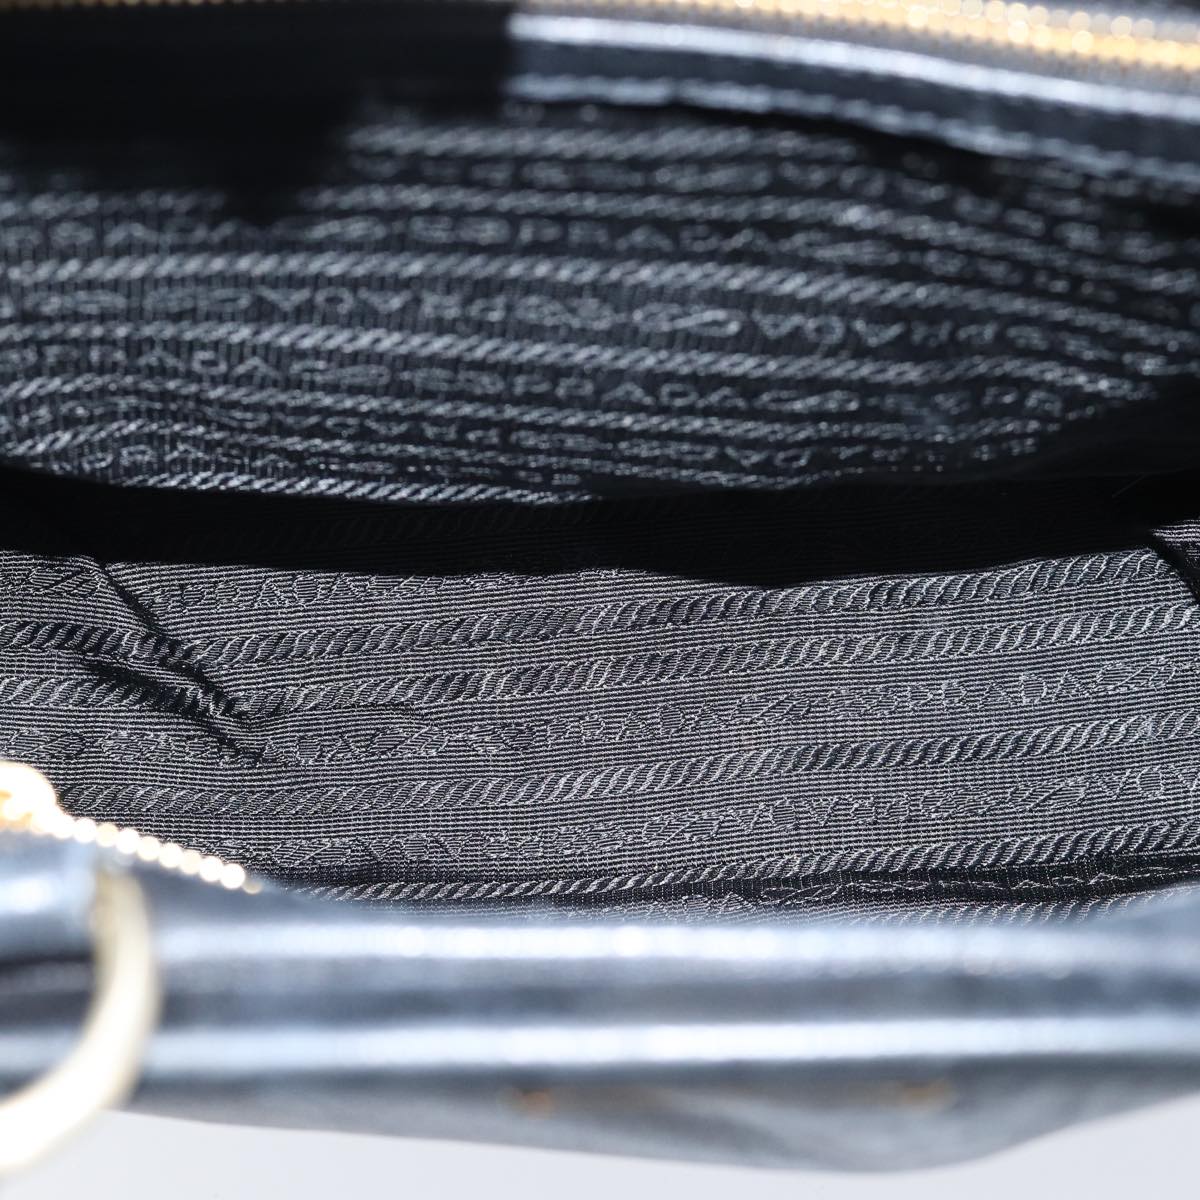 PRADA Tote Bag Leather Black Auth 71494